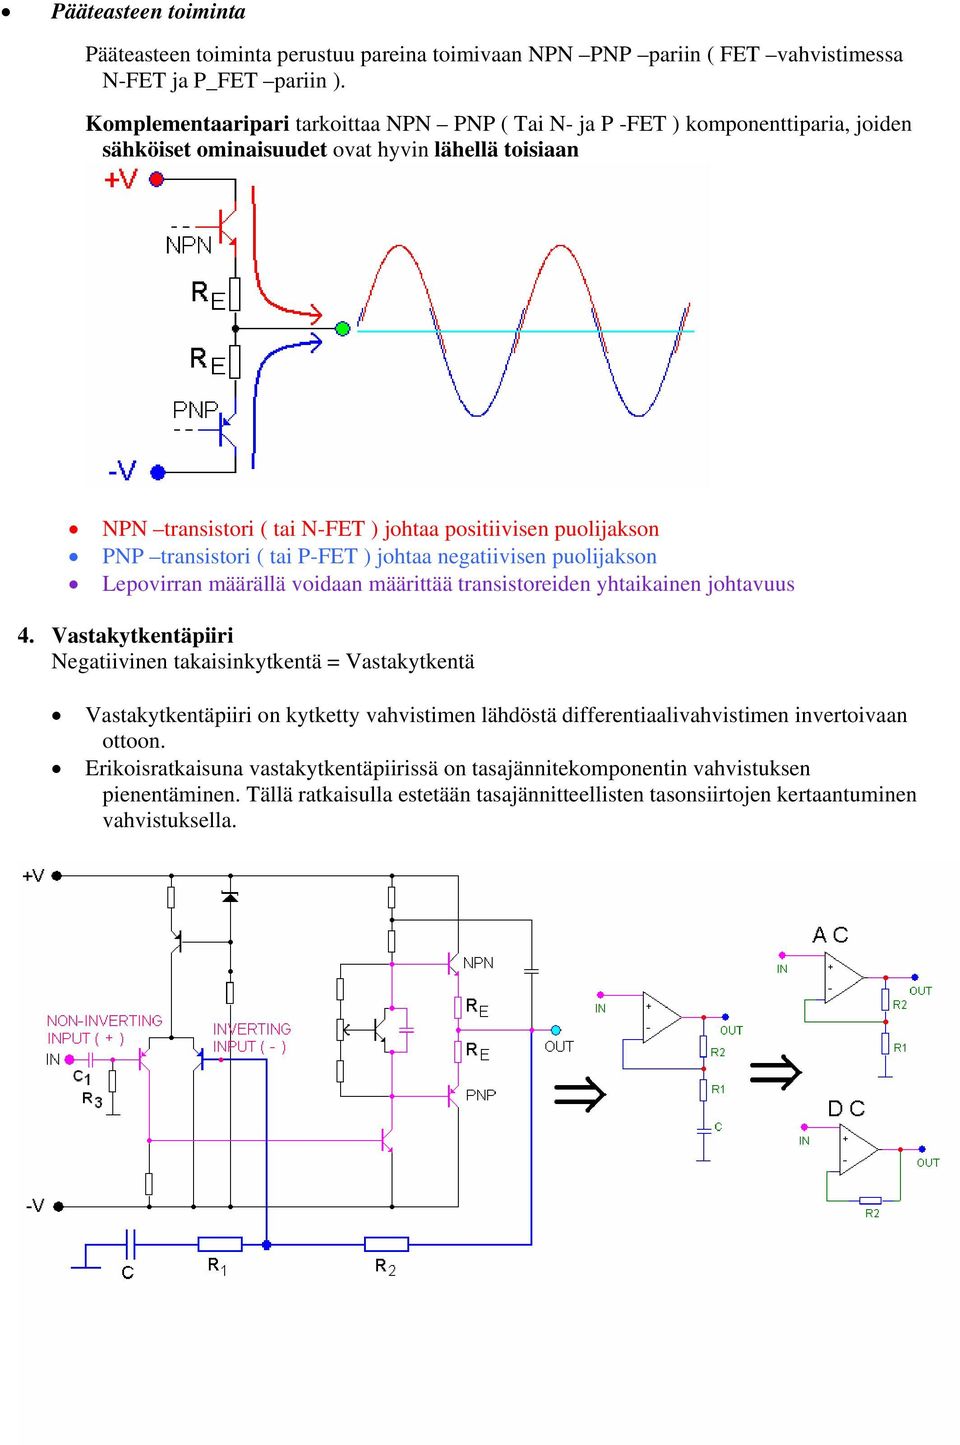 transistori ( tai P-FET johtaa negatiivisen puolijakson Lepovirran määrällä voidaan määrittää transistoreiden yhtaikainen johtavuus 4.